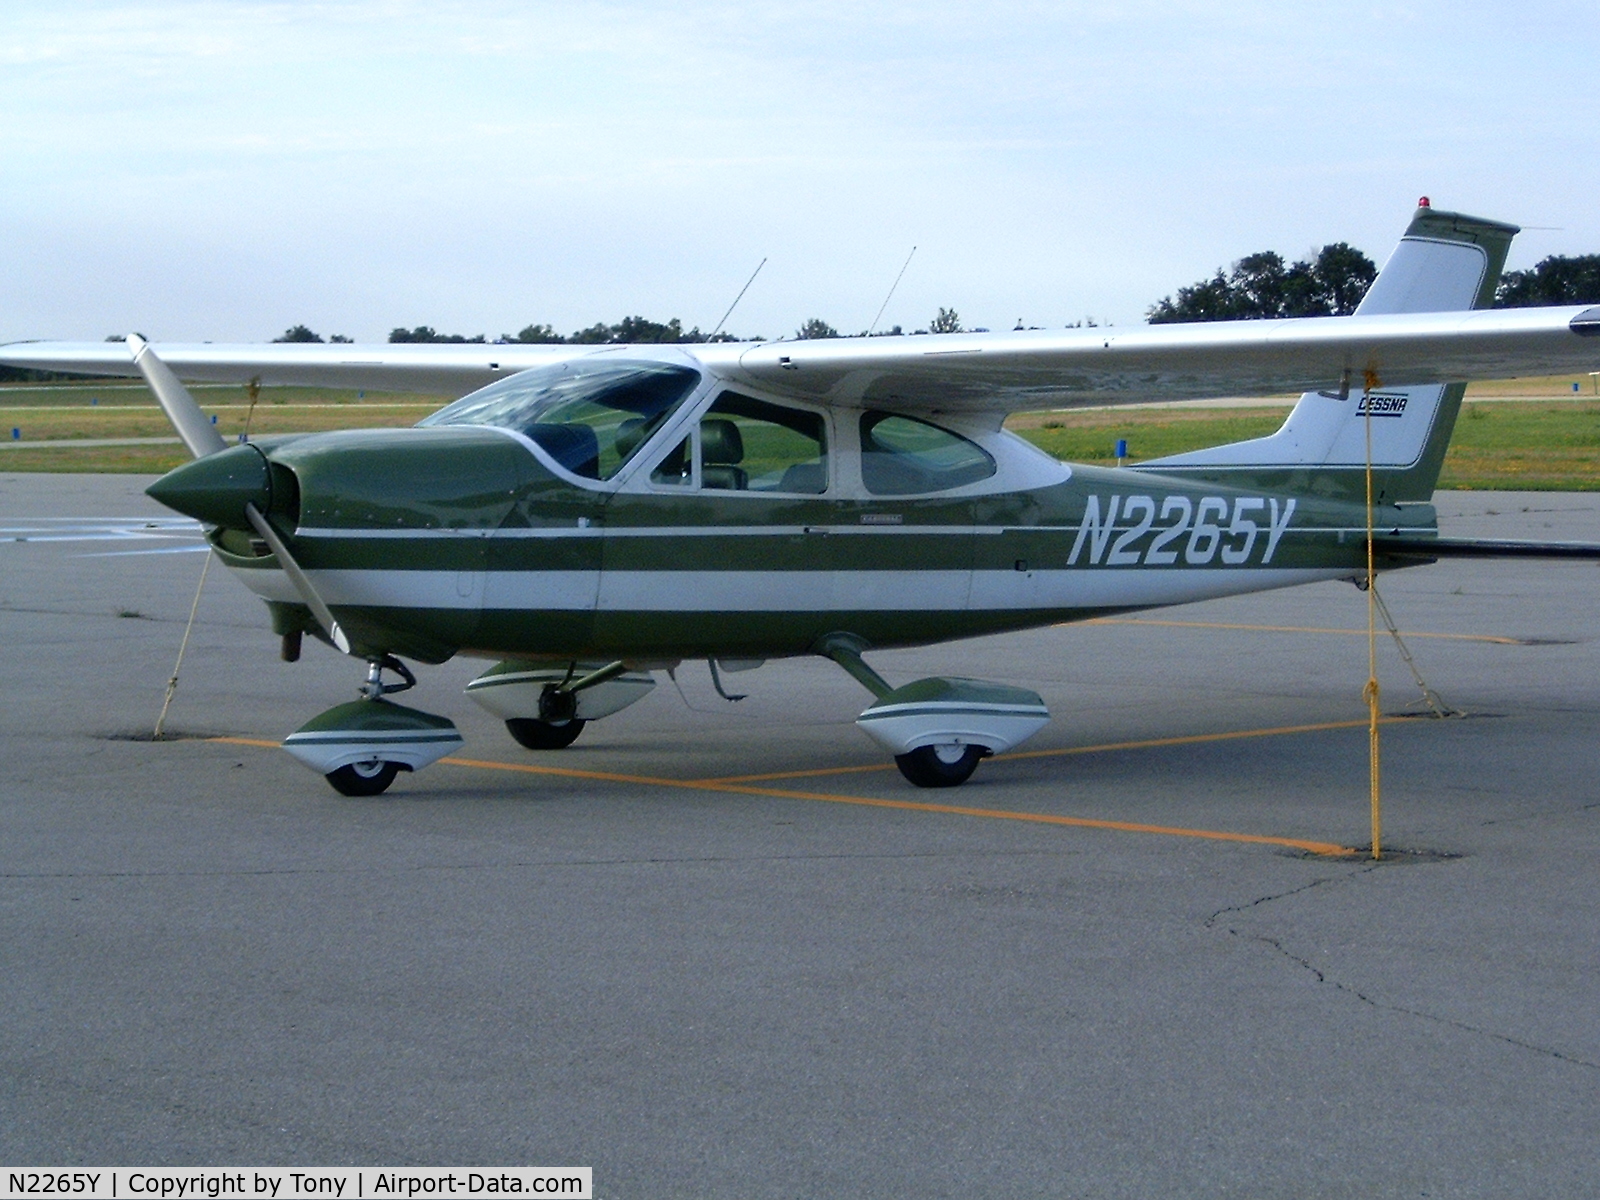 N2265Y, 1967 Cessna 177 Cardinal C/N 17700065, Tied down at LJF